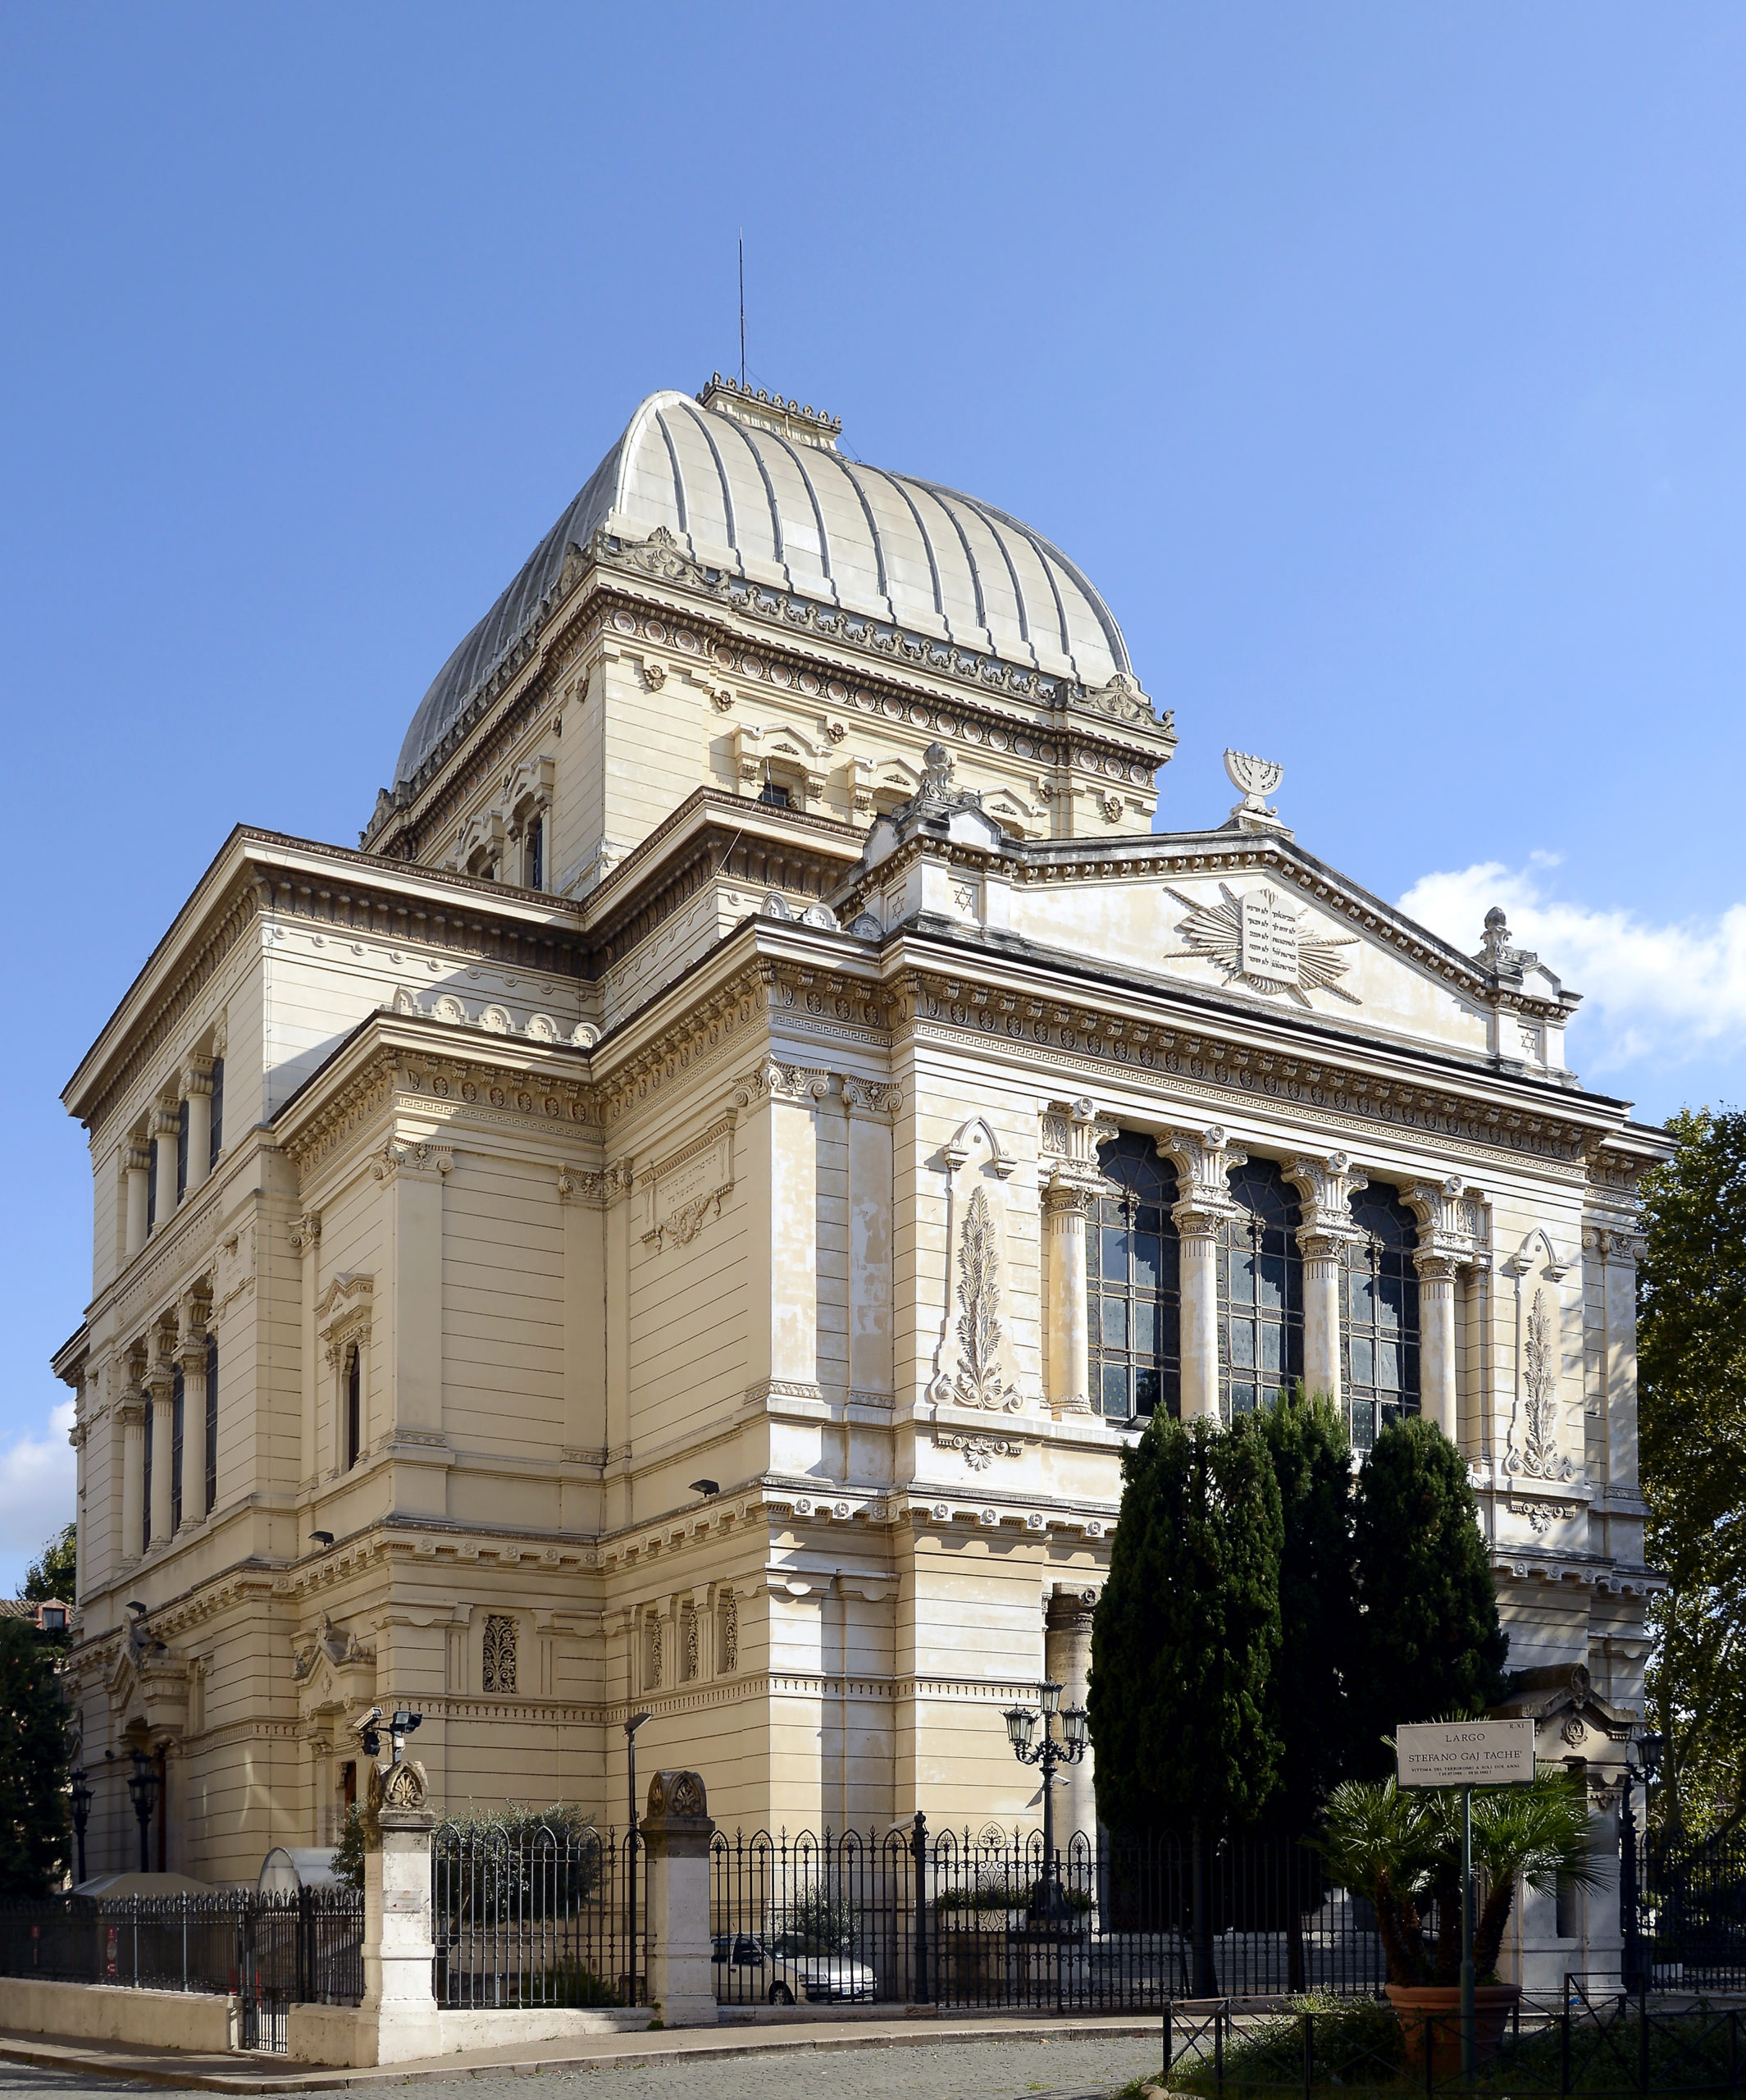 La grande synagogue de Rome @ wikimedia commons / Livioandronico2013